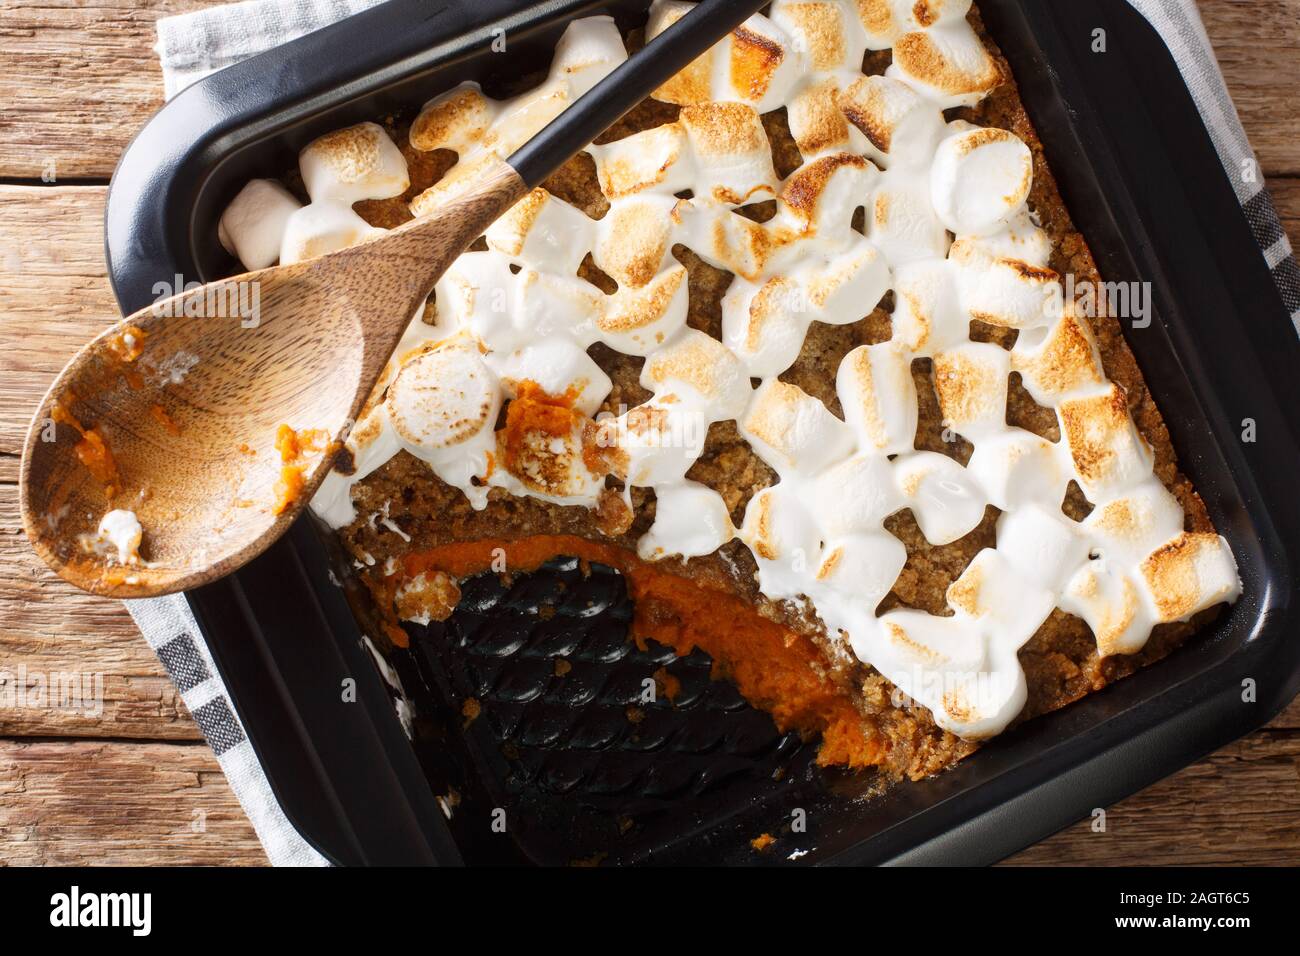 La patata dolce casseruola con le noci pecan e rabboccato con marshmallows close-up in una teglia sul tavolo. Parte superiore orizzontale vista da sopra Foto Stock